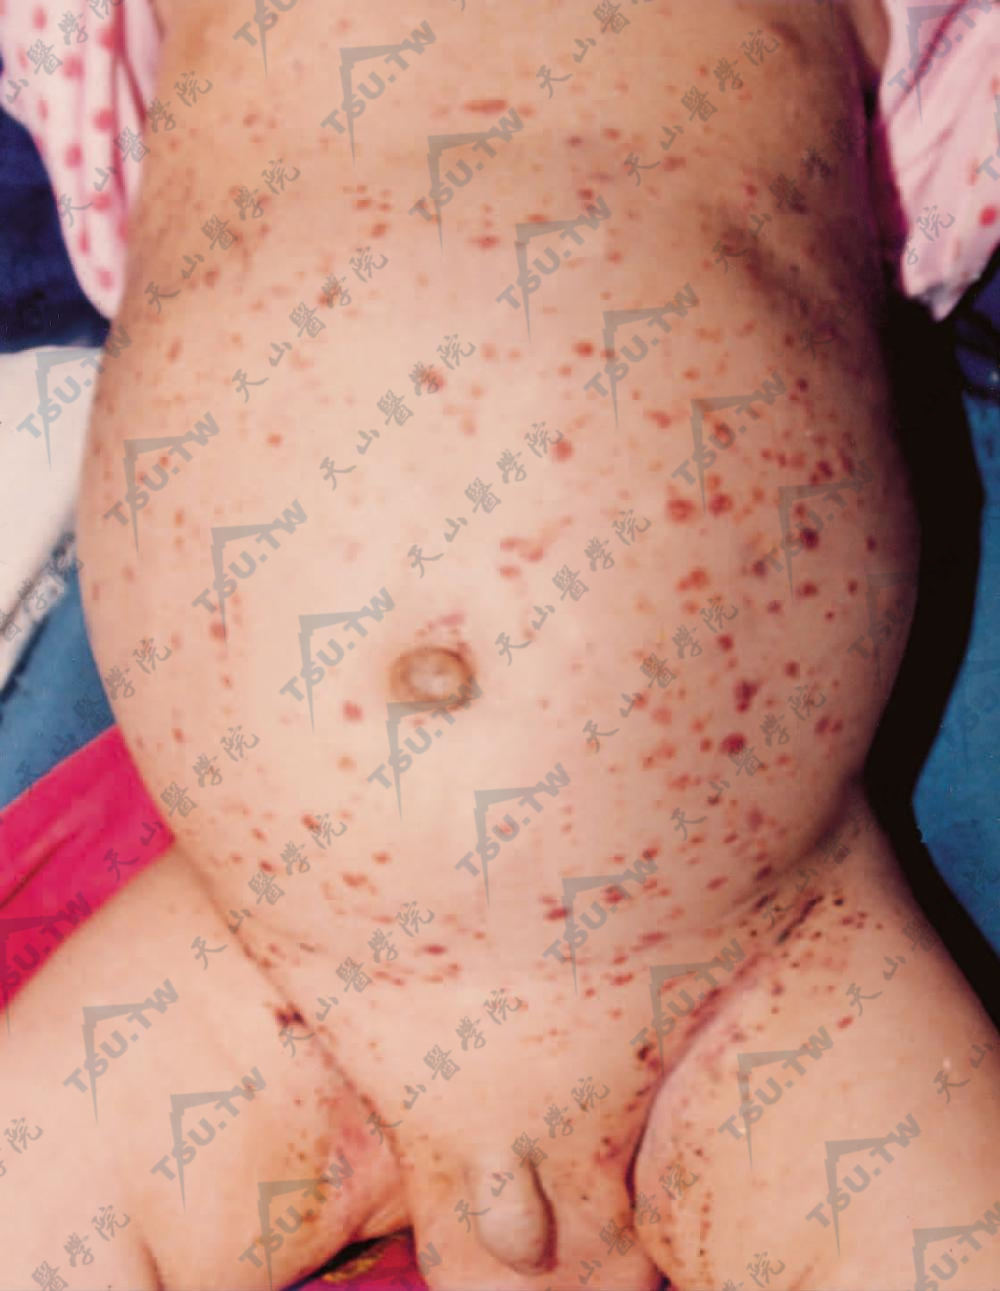 朗格汉斯细胞组织细胞增生症婴儿患者：婴儿躯干部发生群集的黄棕色鳞屑性斑丘疹，有的可呈紫癜状，分布广泛